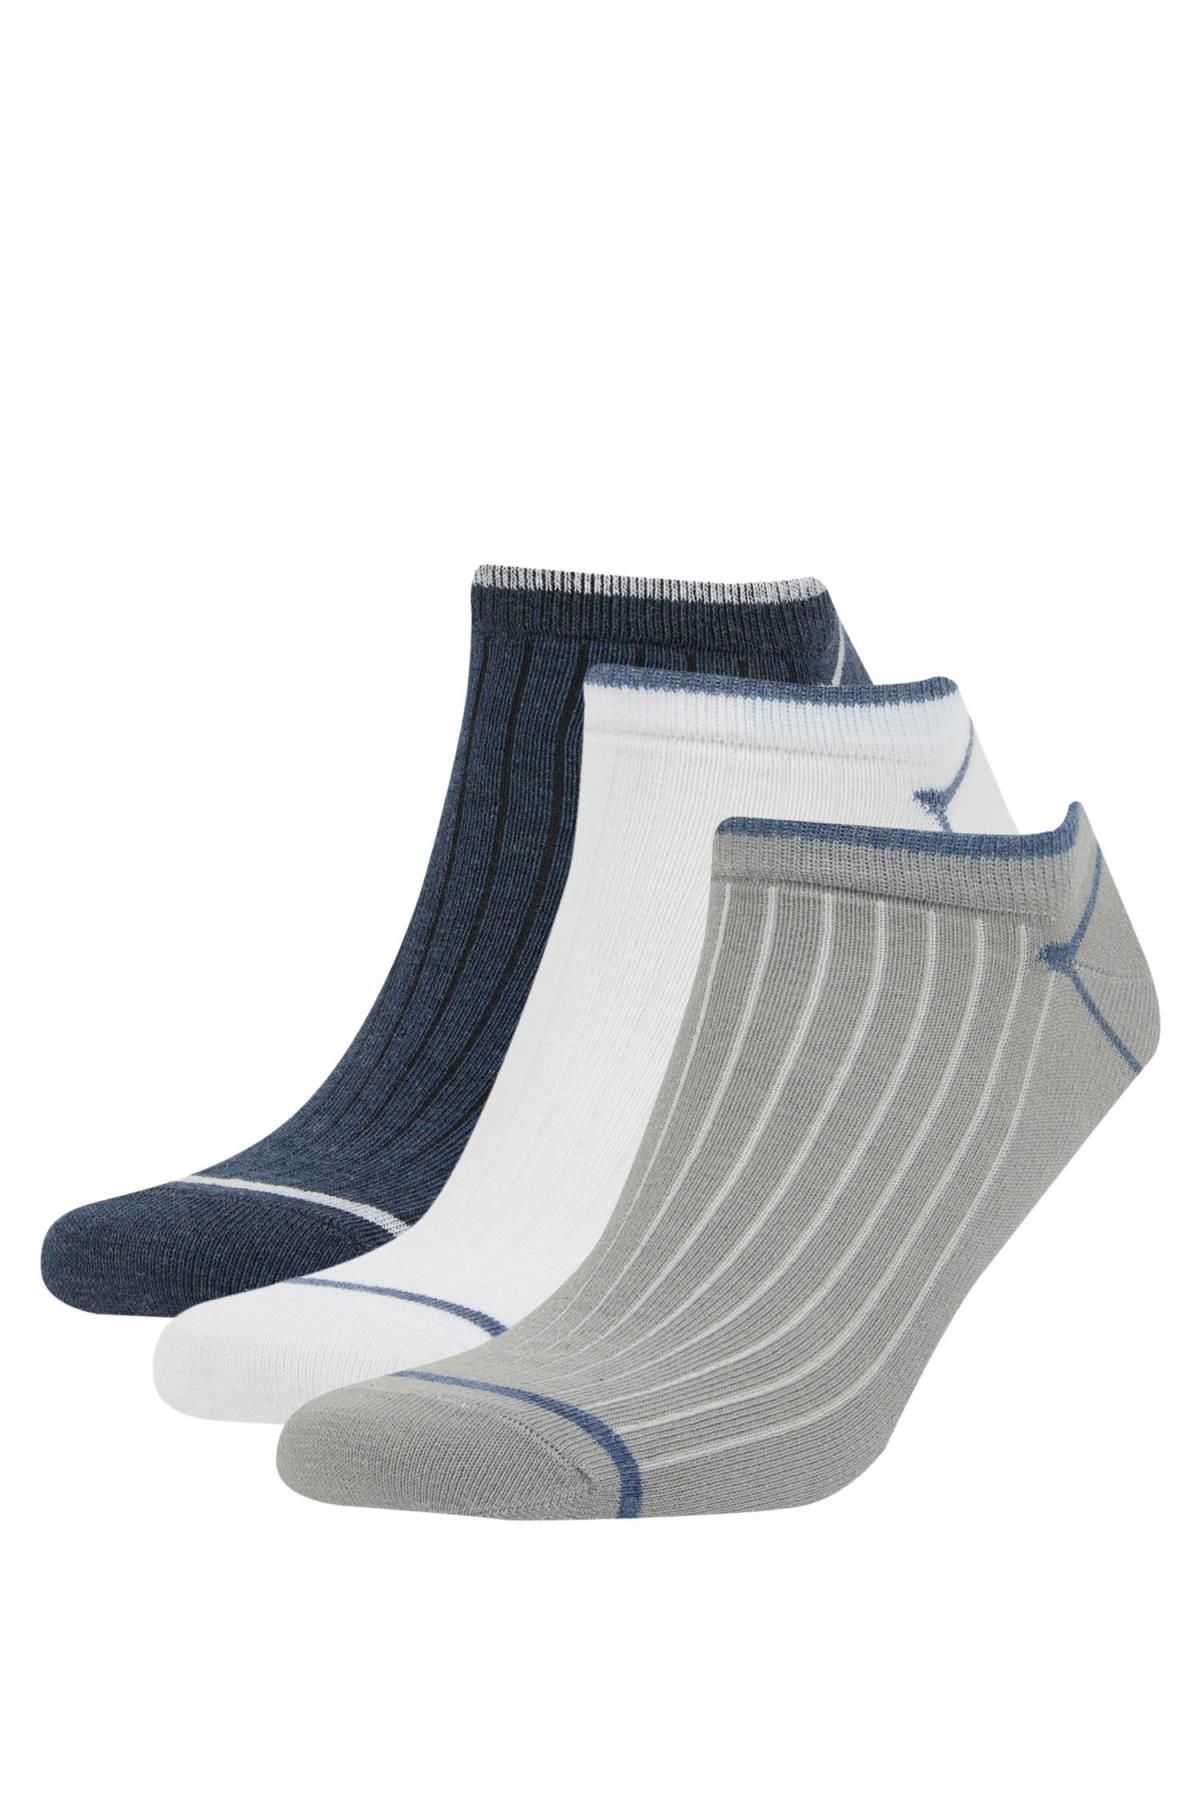 Defacto Erkek 3lü Pamuklu Patik Çorap C0114AXNS